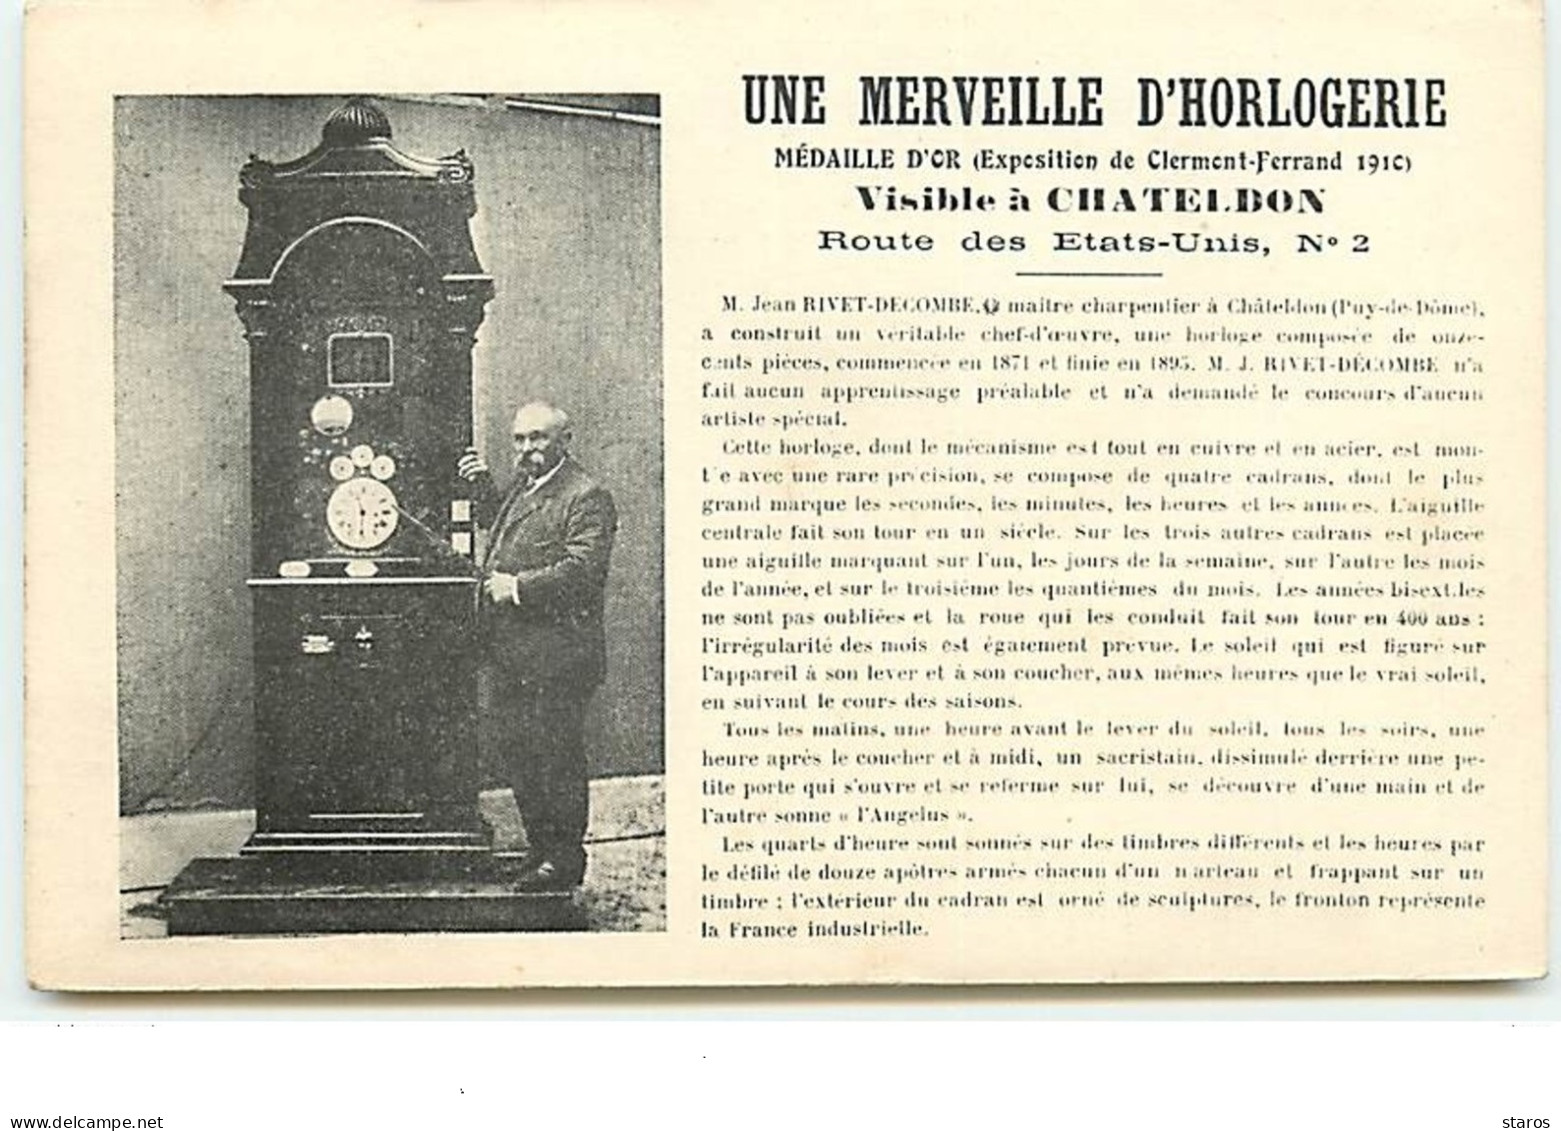 Une Merveille D'Horlogerie - Visible à CHATELDON Rte Etats-Unis N°2 - Jean Rivet-Decombe Maitre Charpentier - Chateldon